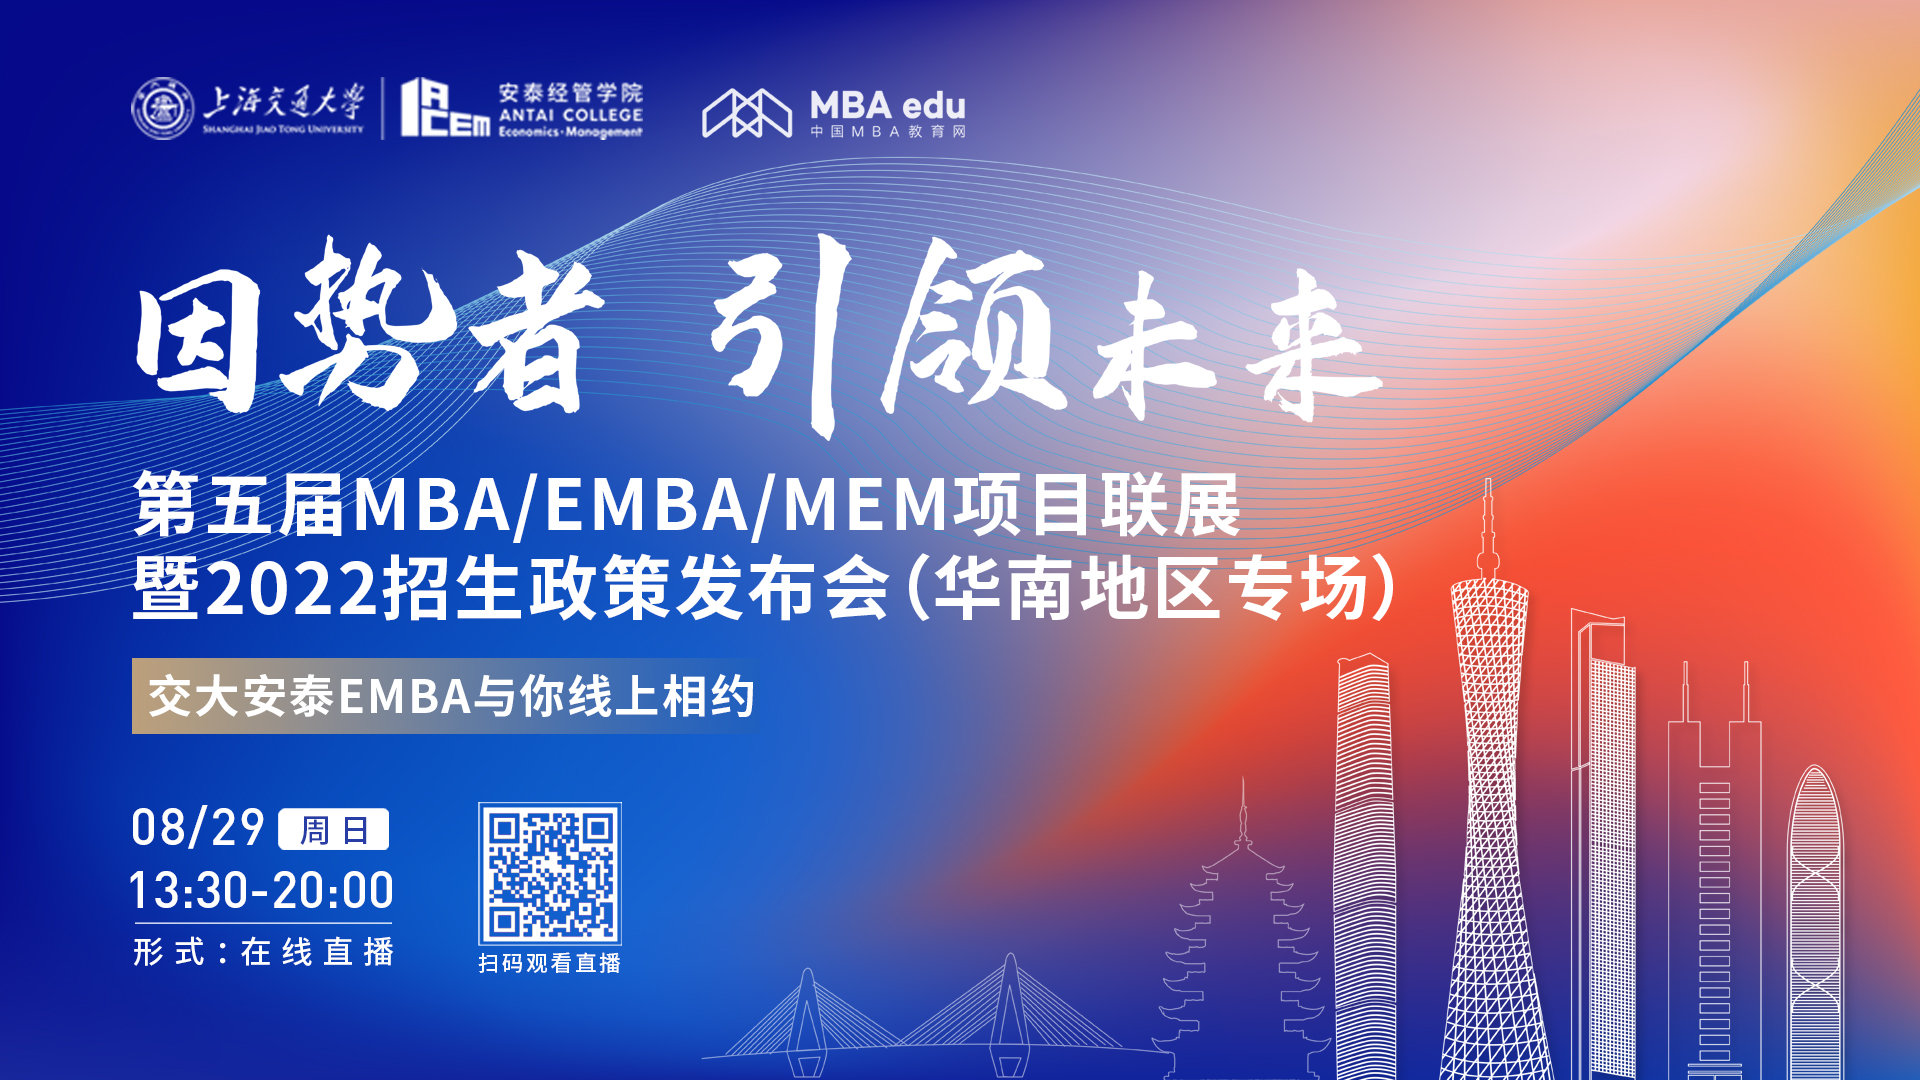 【8.29】上海交通大学安泰EMBA邀您在线收看第五届MBA/EMBA/MEM项目联展暨2022招生政策发布会（华南地区专场）